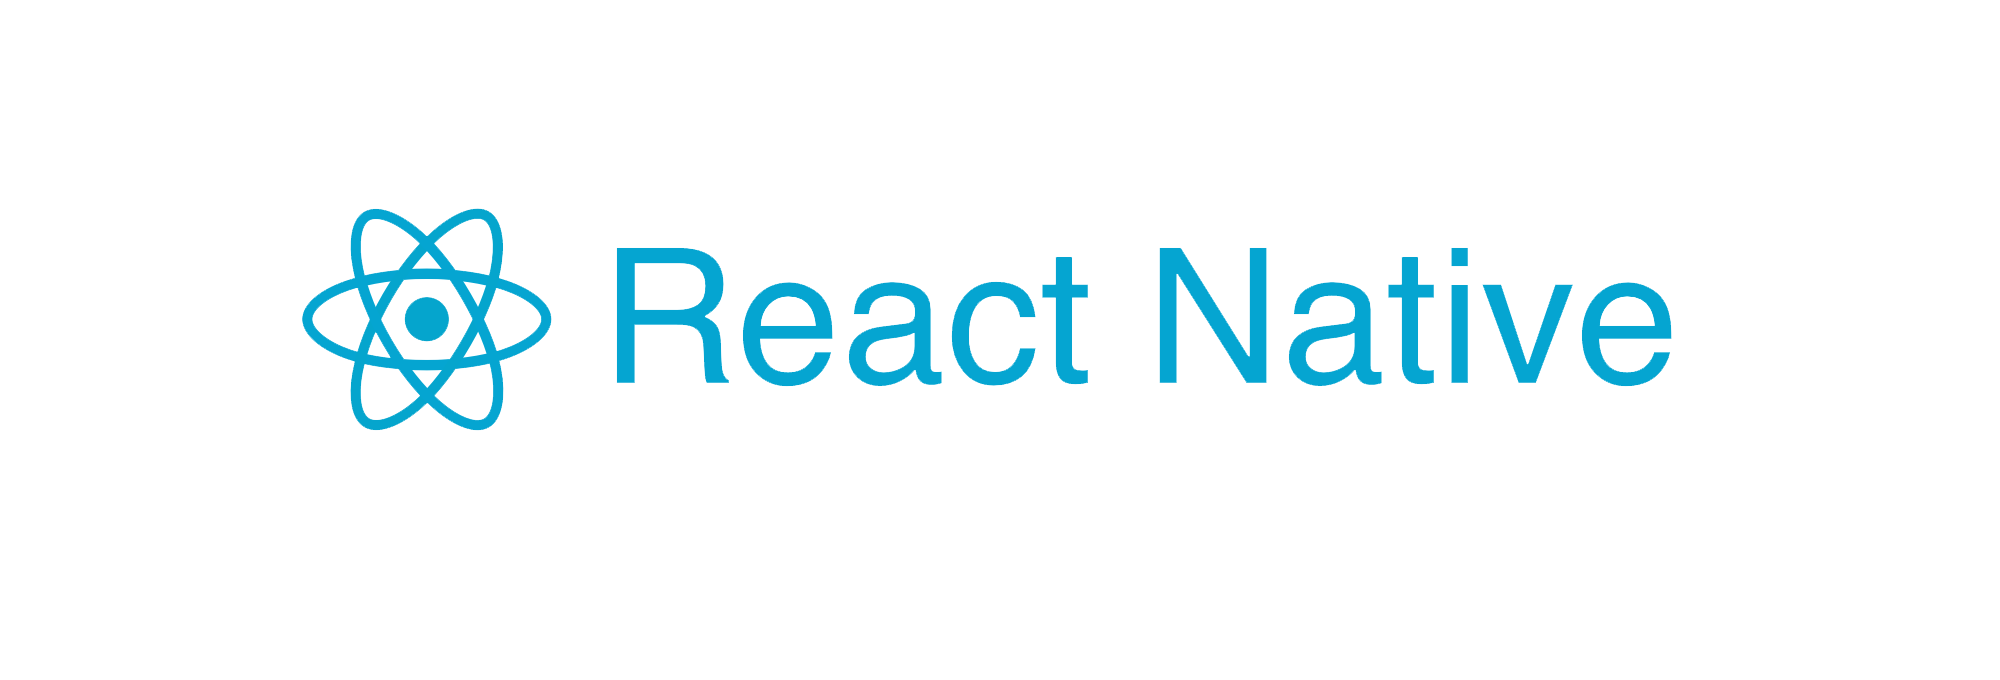 React native. React native лого. 3. React native. Реакт Натив логотип.